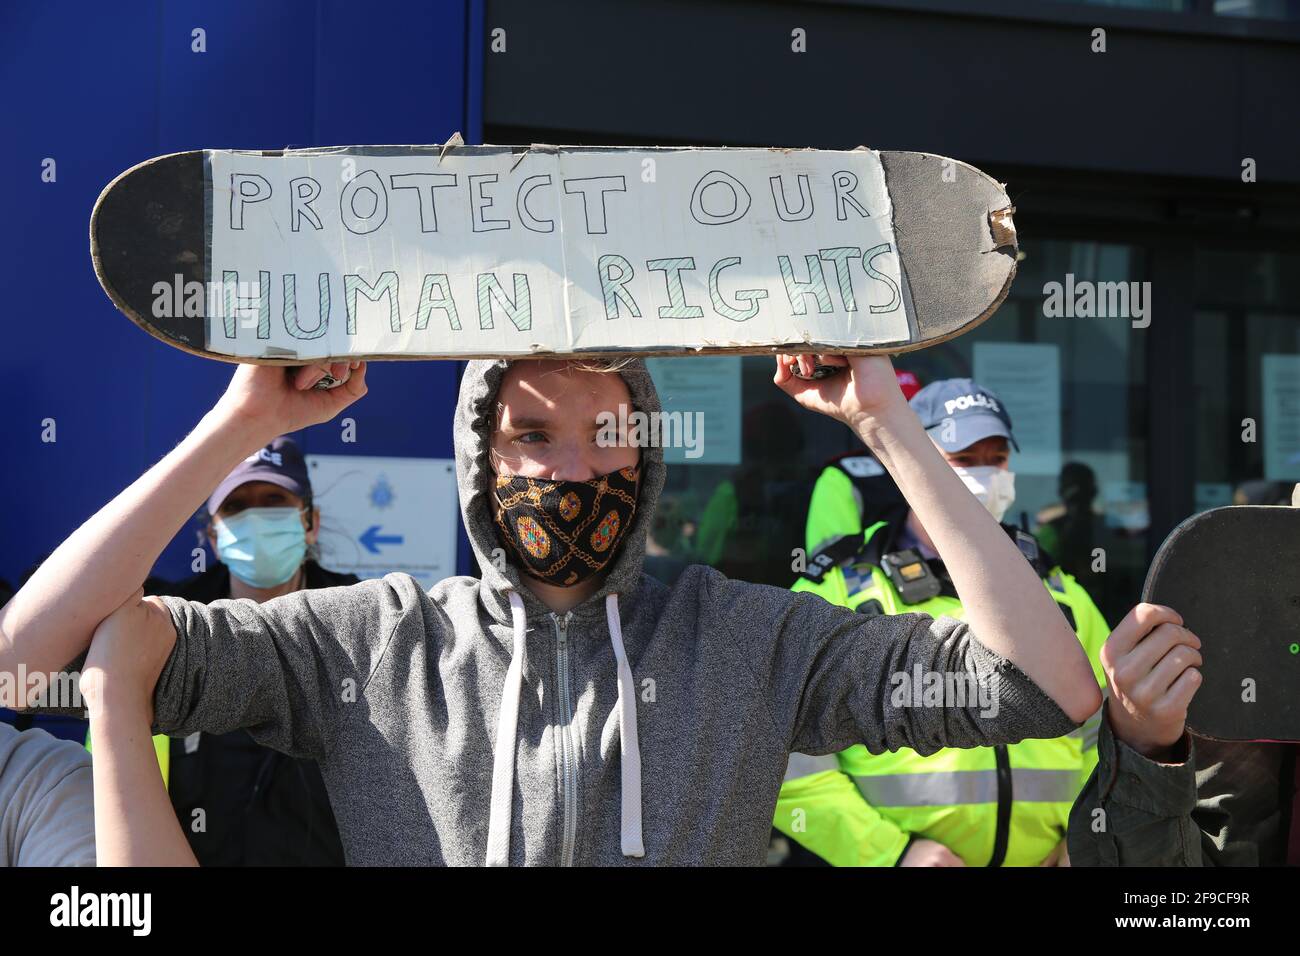 Kill the Bill Protests, Brighton, UK, 17th April 2021 Stock Photo